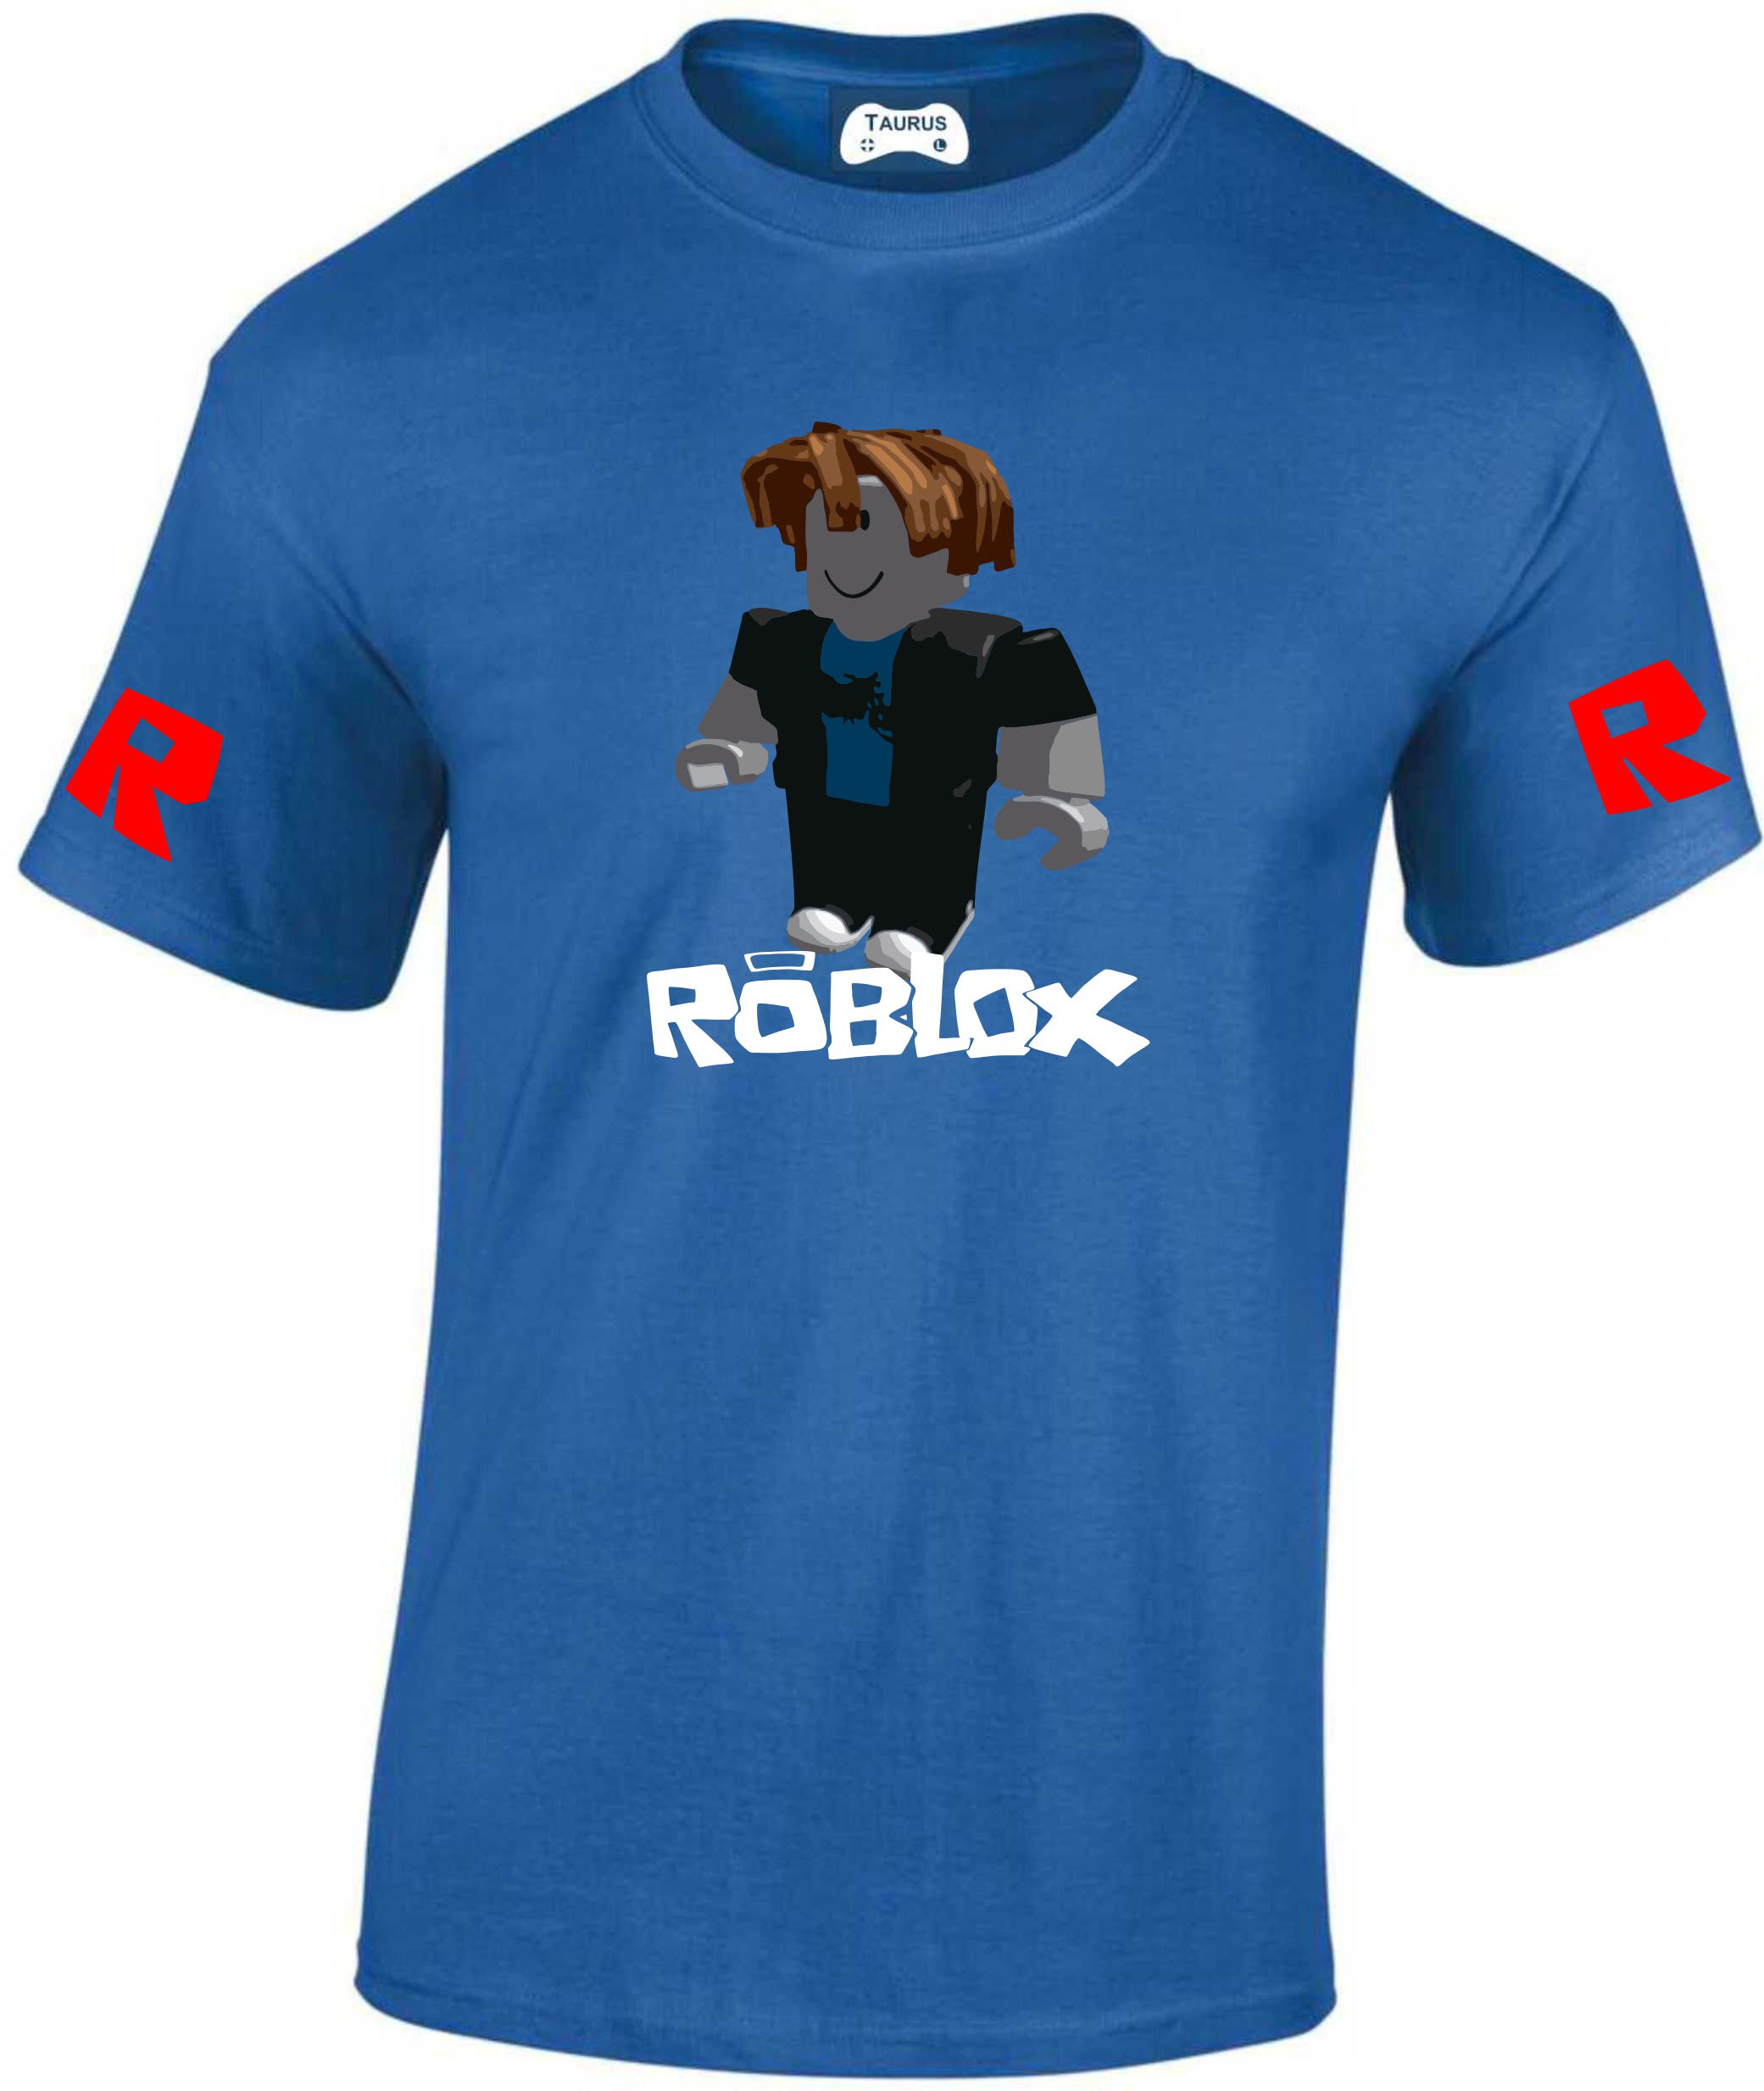 Roblox Bacon Hair | Essential T-Shirt